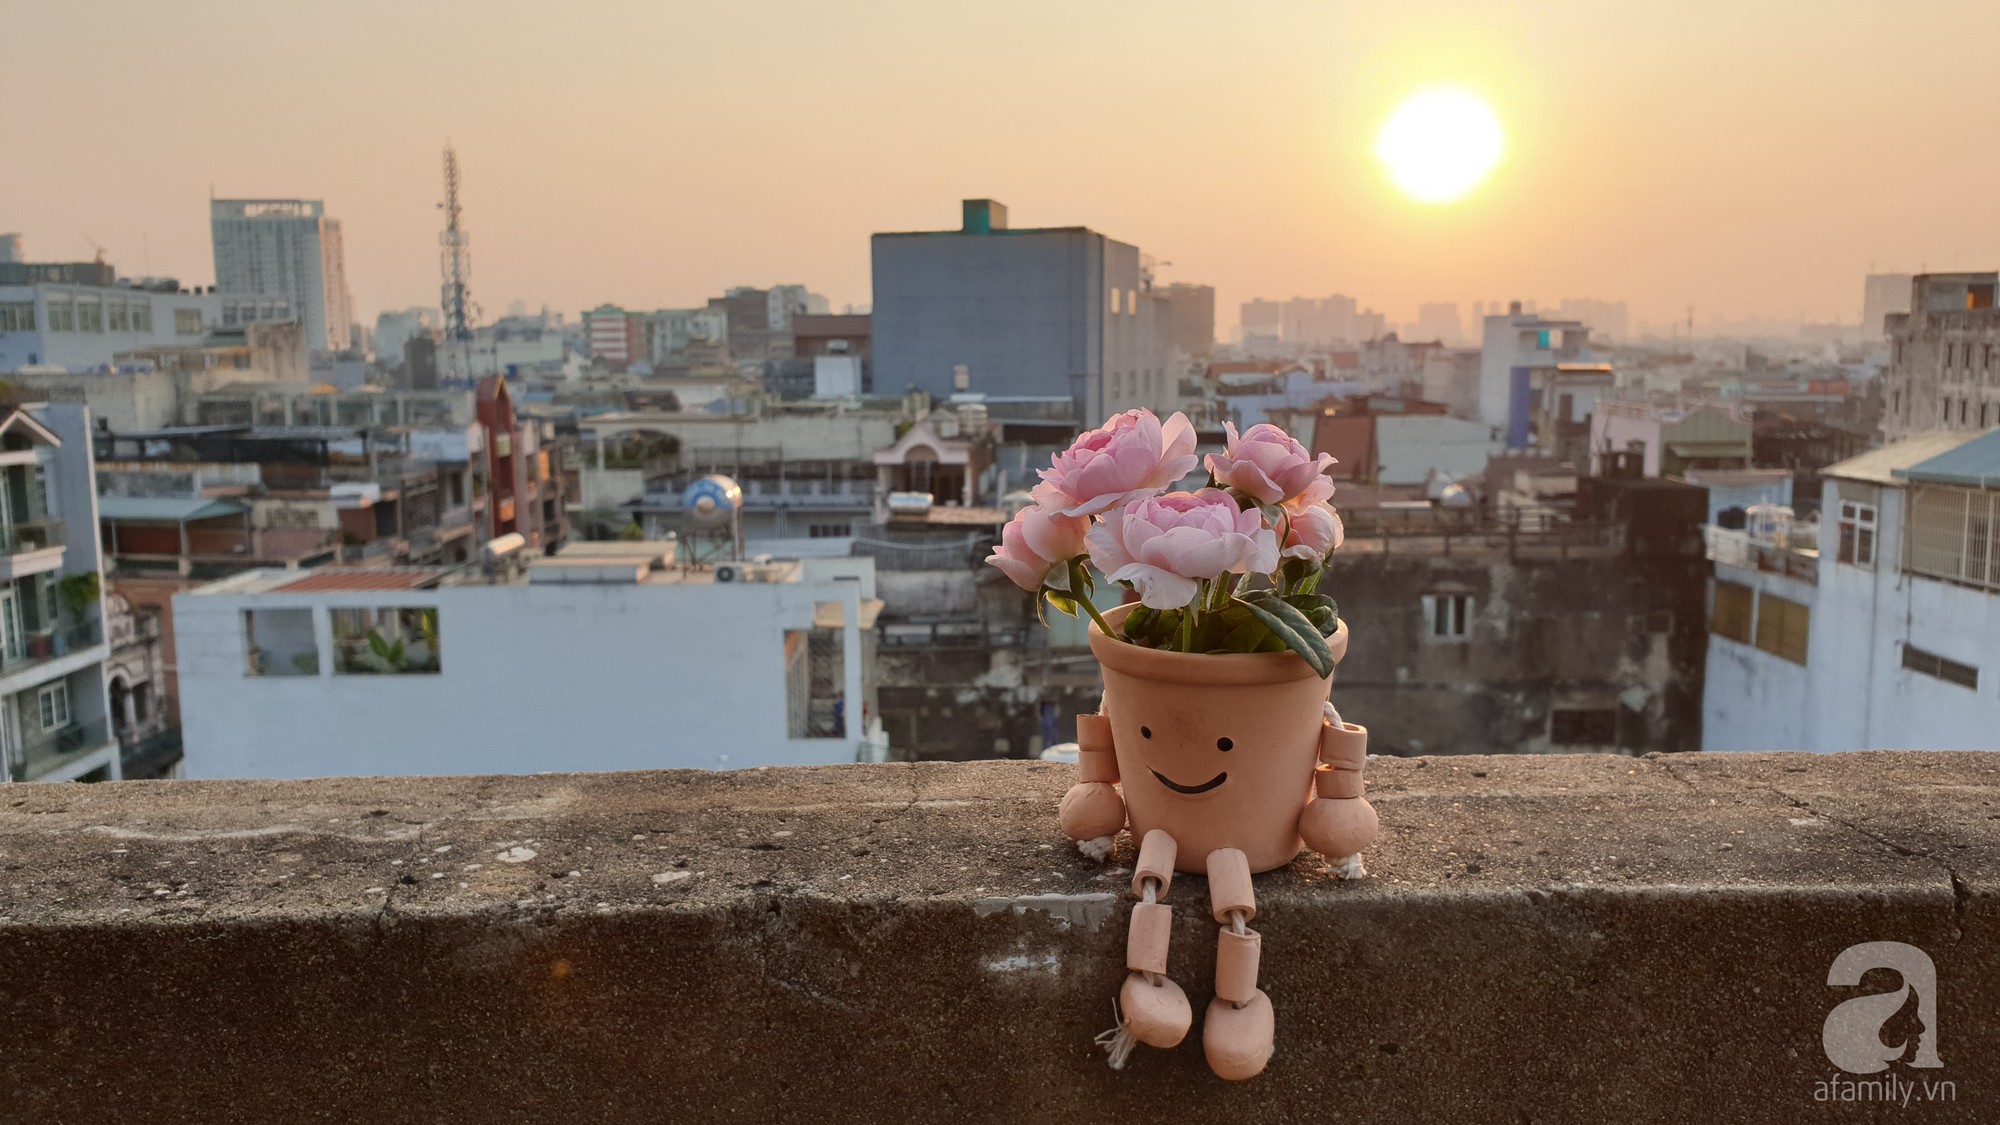 Vườn hồng trên sân thượng rực rỡ sắc màu của chàng trai 8x siêu đảm ở Sài Gòn - Ảnh 17.